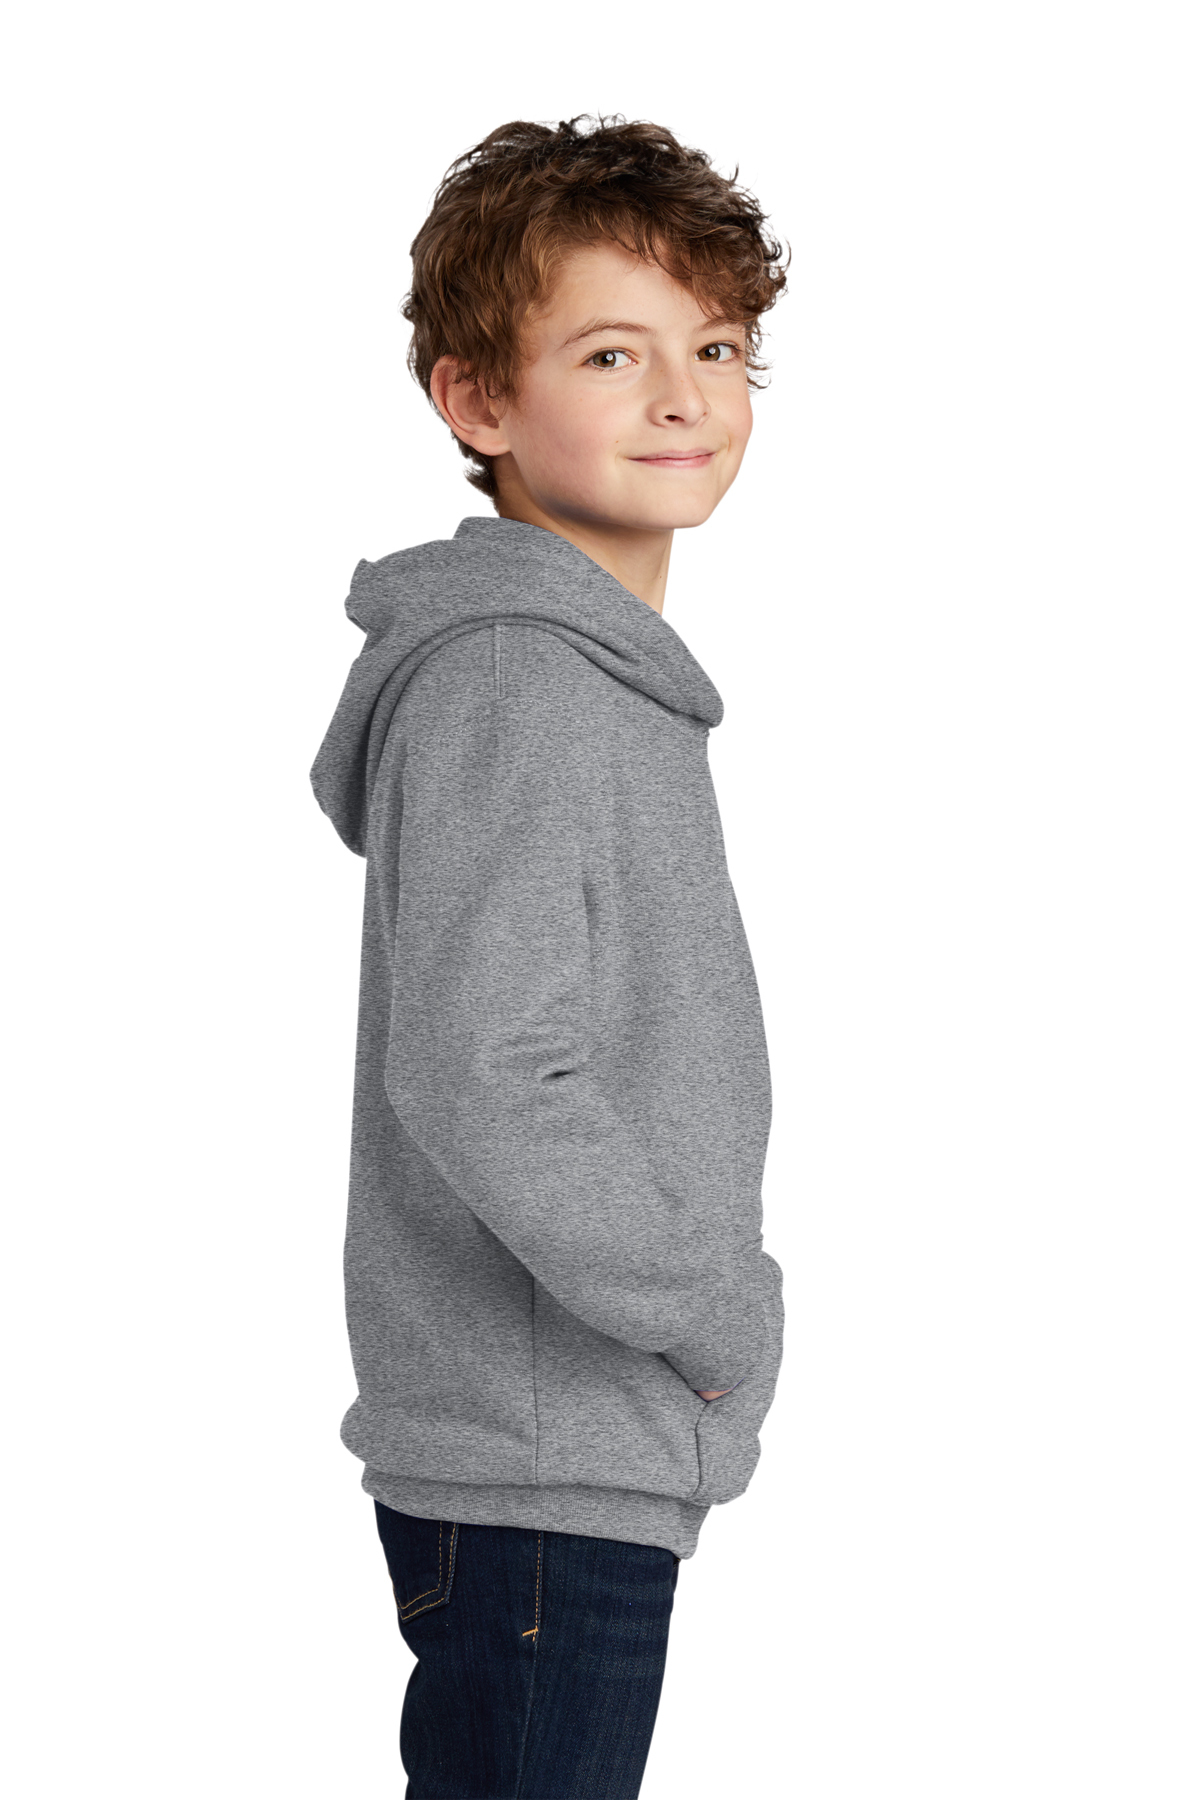 Port & Company ® Youth Fan Favorite™ Fleece Pullover Hooded Sweatshirt ...